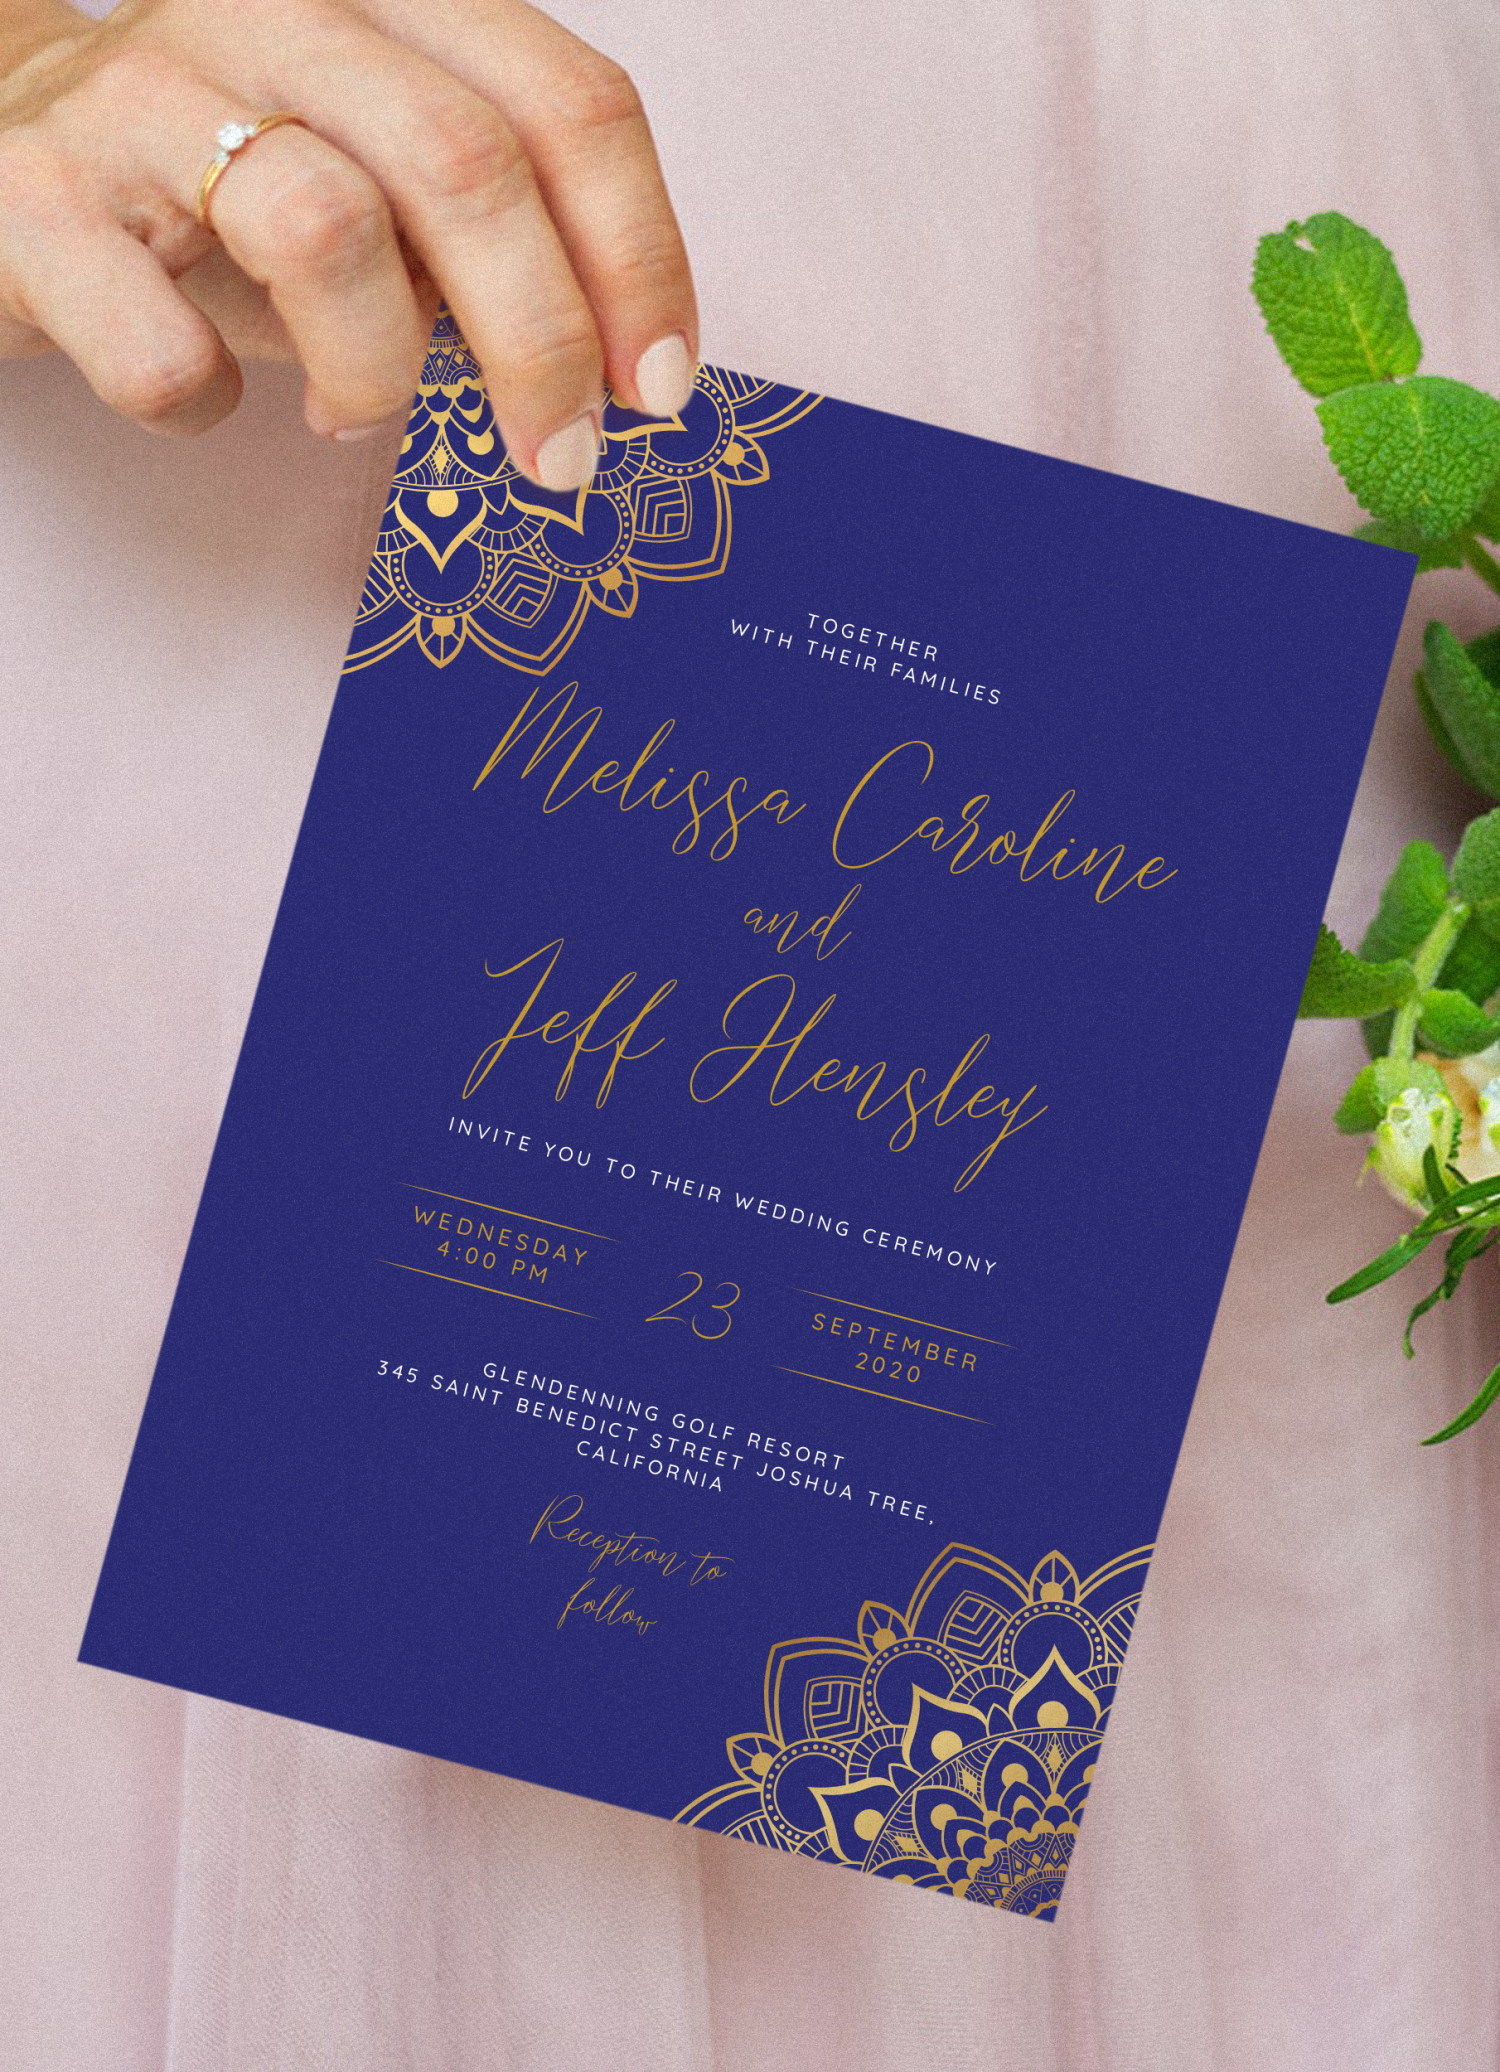 Mẫu thiệp cưới vàng và xanh dương tải xuống sẽ giúp bạn tiết kiệm thời gian và công sức trong quá trình chuẩn bị đám cưới. Hãy tải về và sử dụng ngay để có những thiệp cưới đẹp và chất lượng nhất.